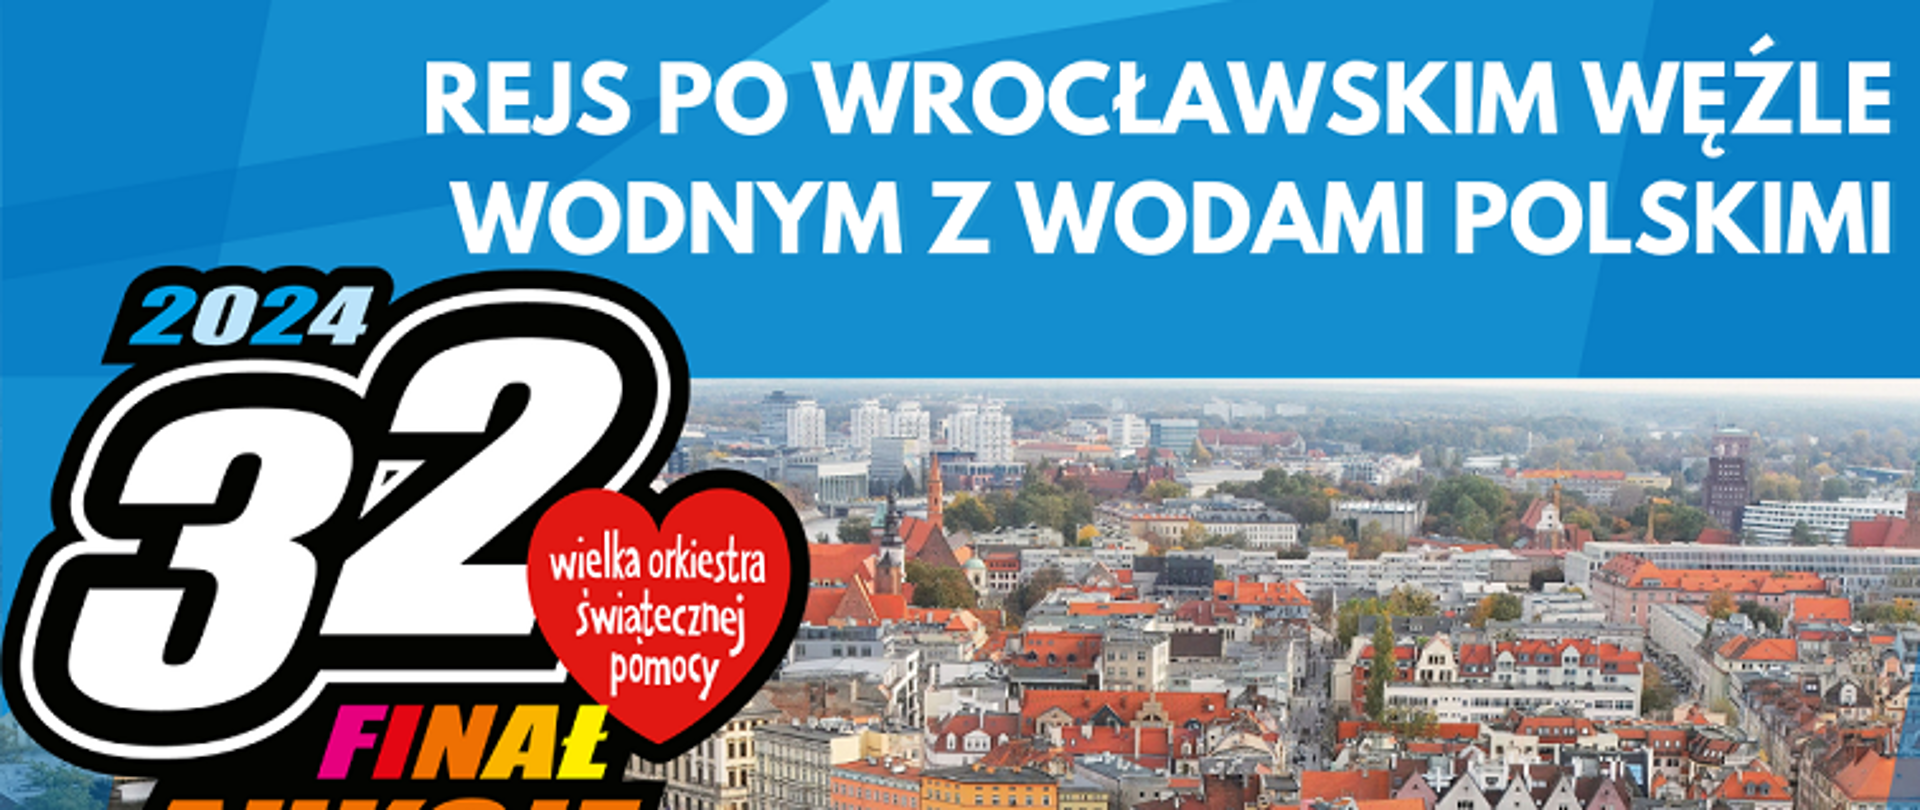 Wrocław_Rejs_po_Wrocławskim_Węźle_Wodnym_z_Wodami_Polskimi